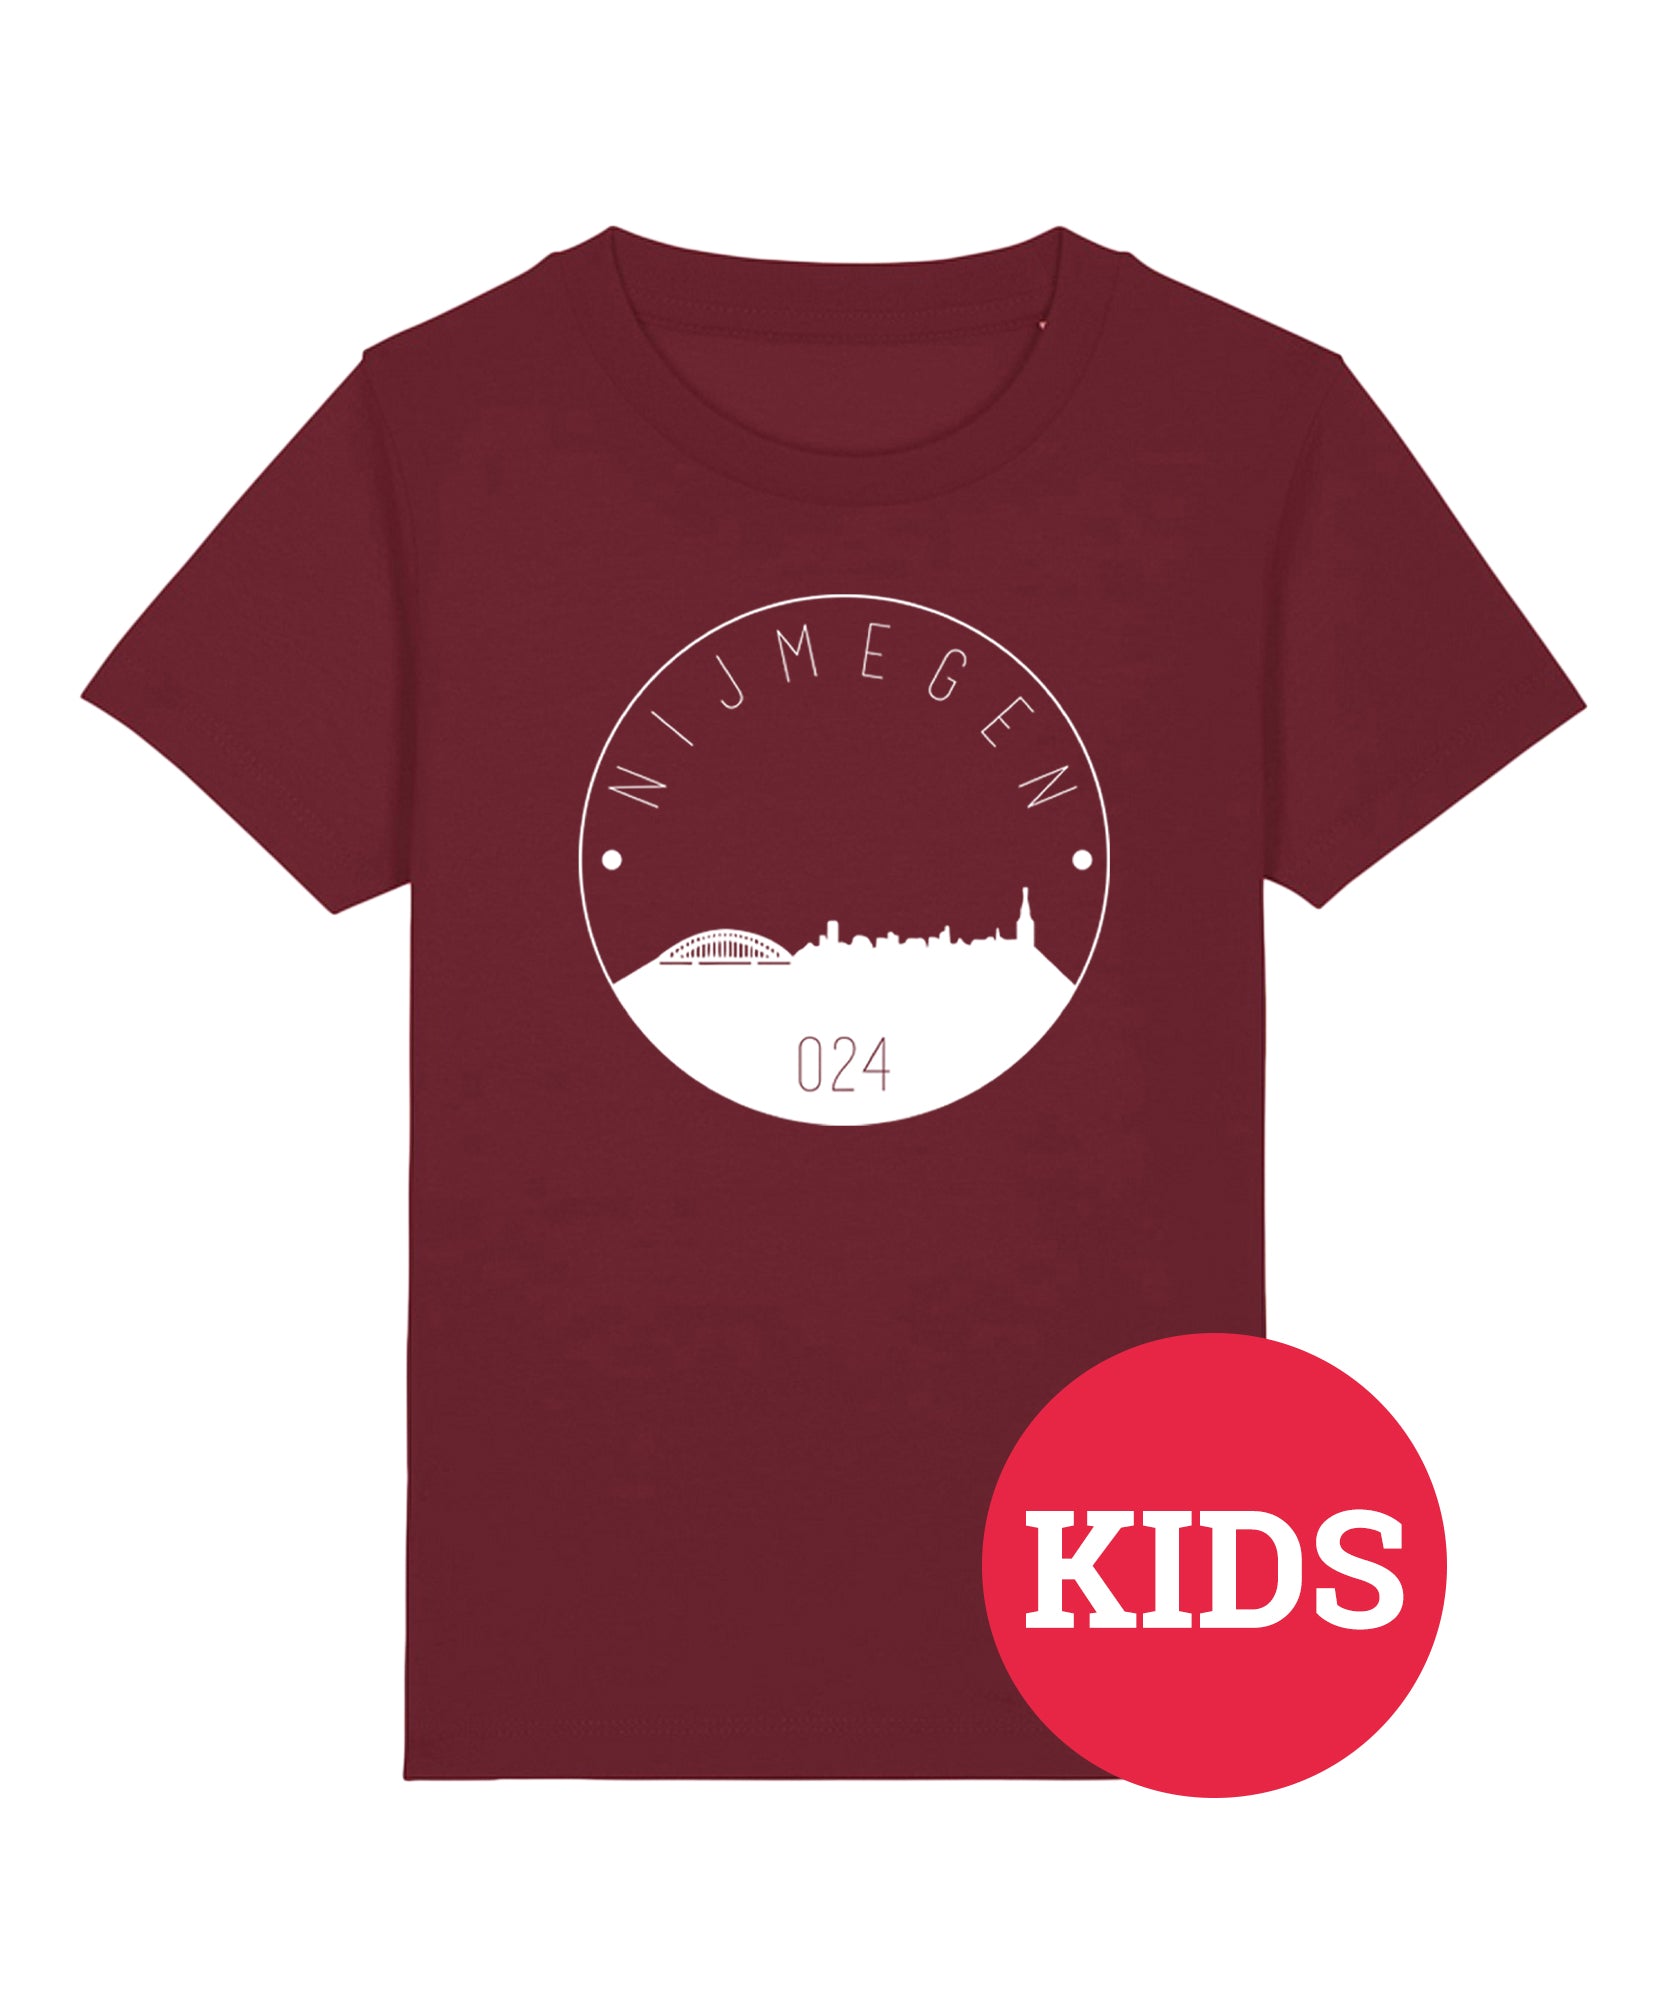 Bordeaux rood T-shirt voor kinderen met Skyline print